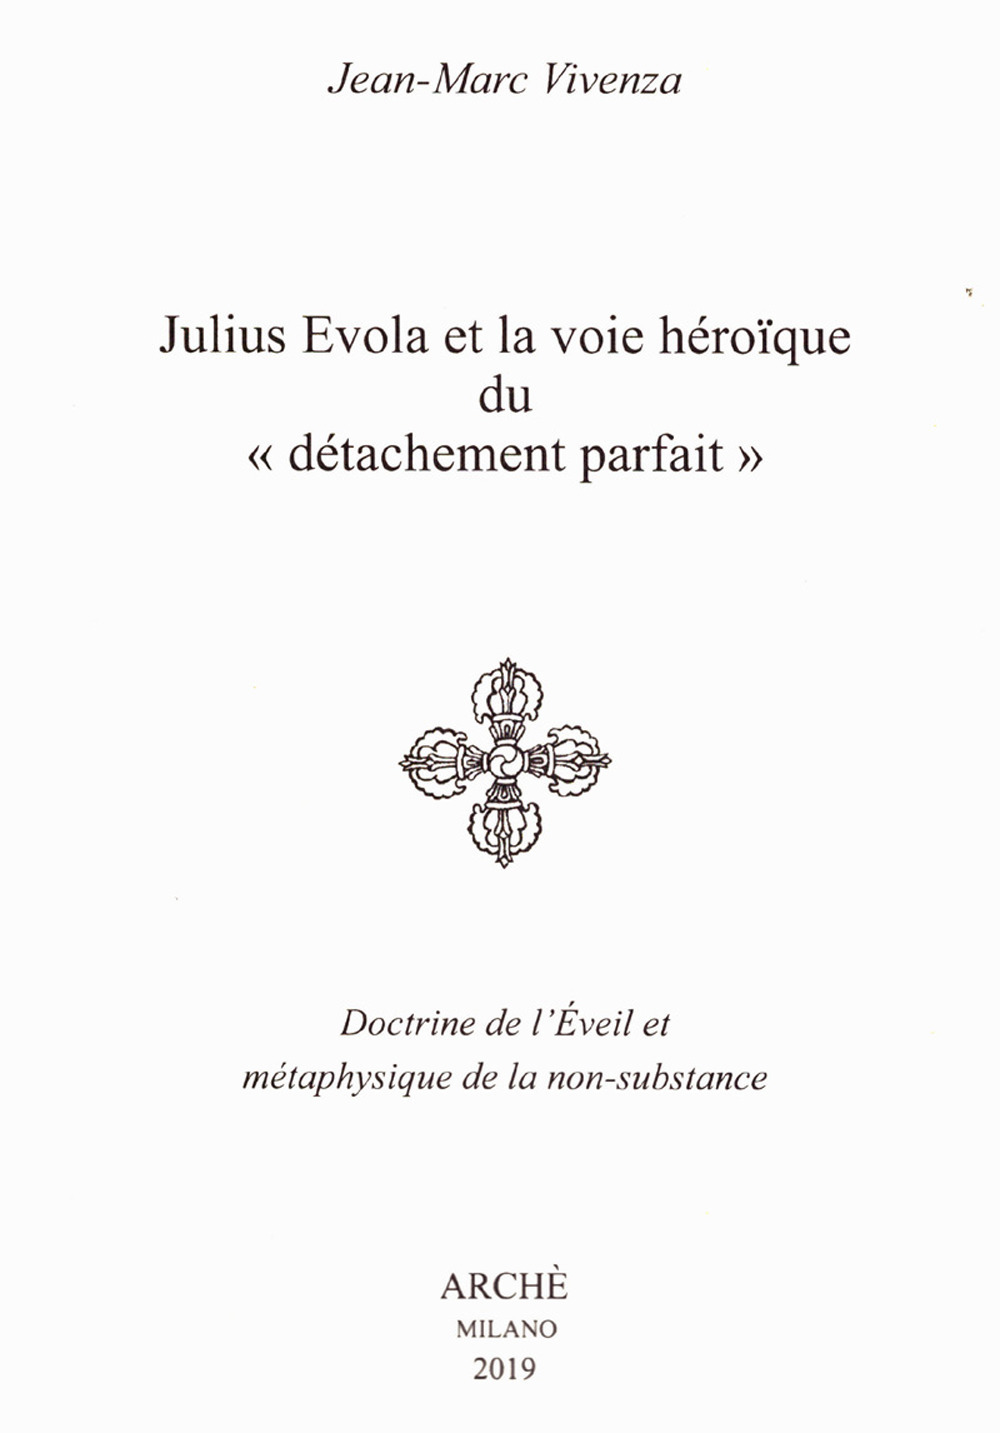 Julius Evola et la voie héroïque du «détachement parfait». Doctrine de l'Eveil et métaphysique de la non-substance